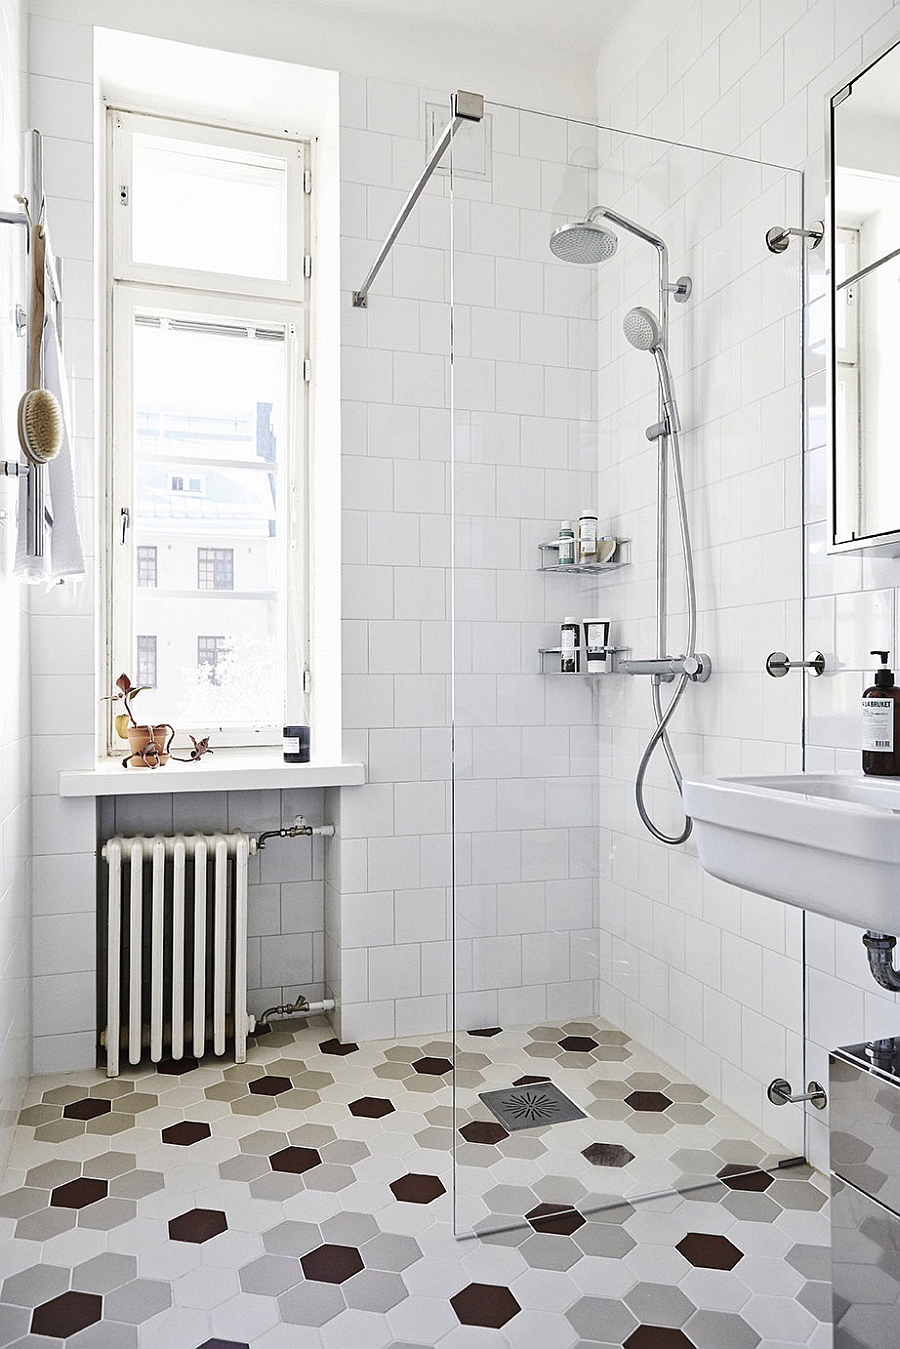 Scandinavian bathroom design with hexagonal floor tiles